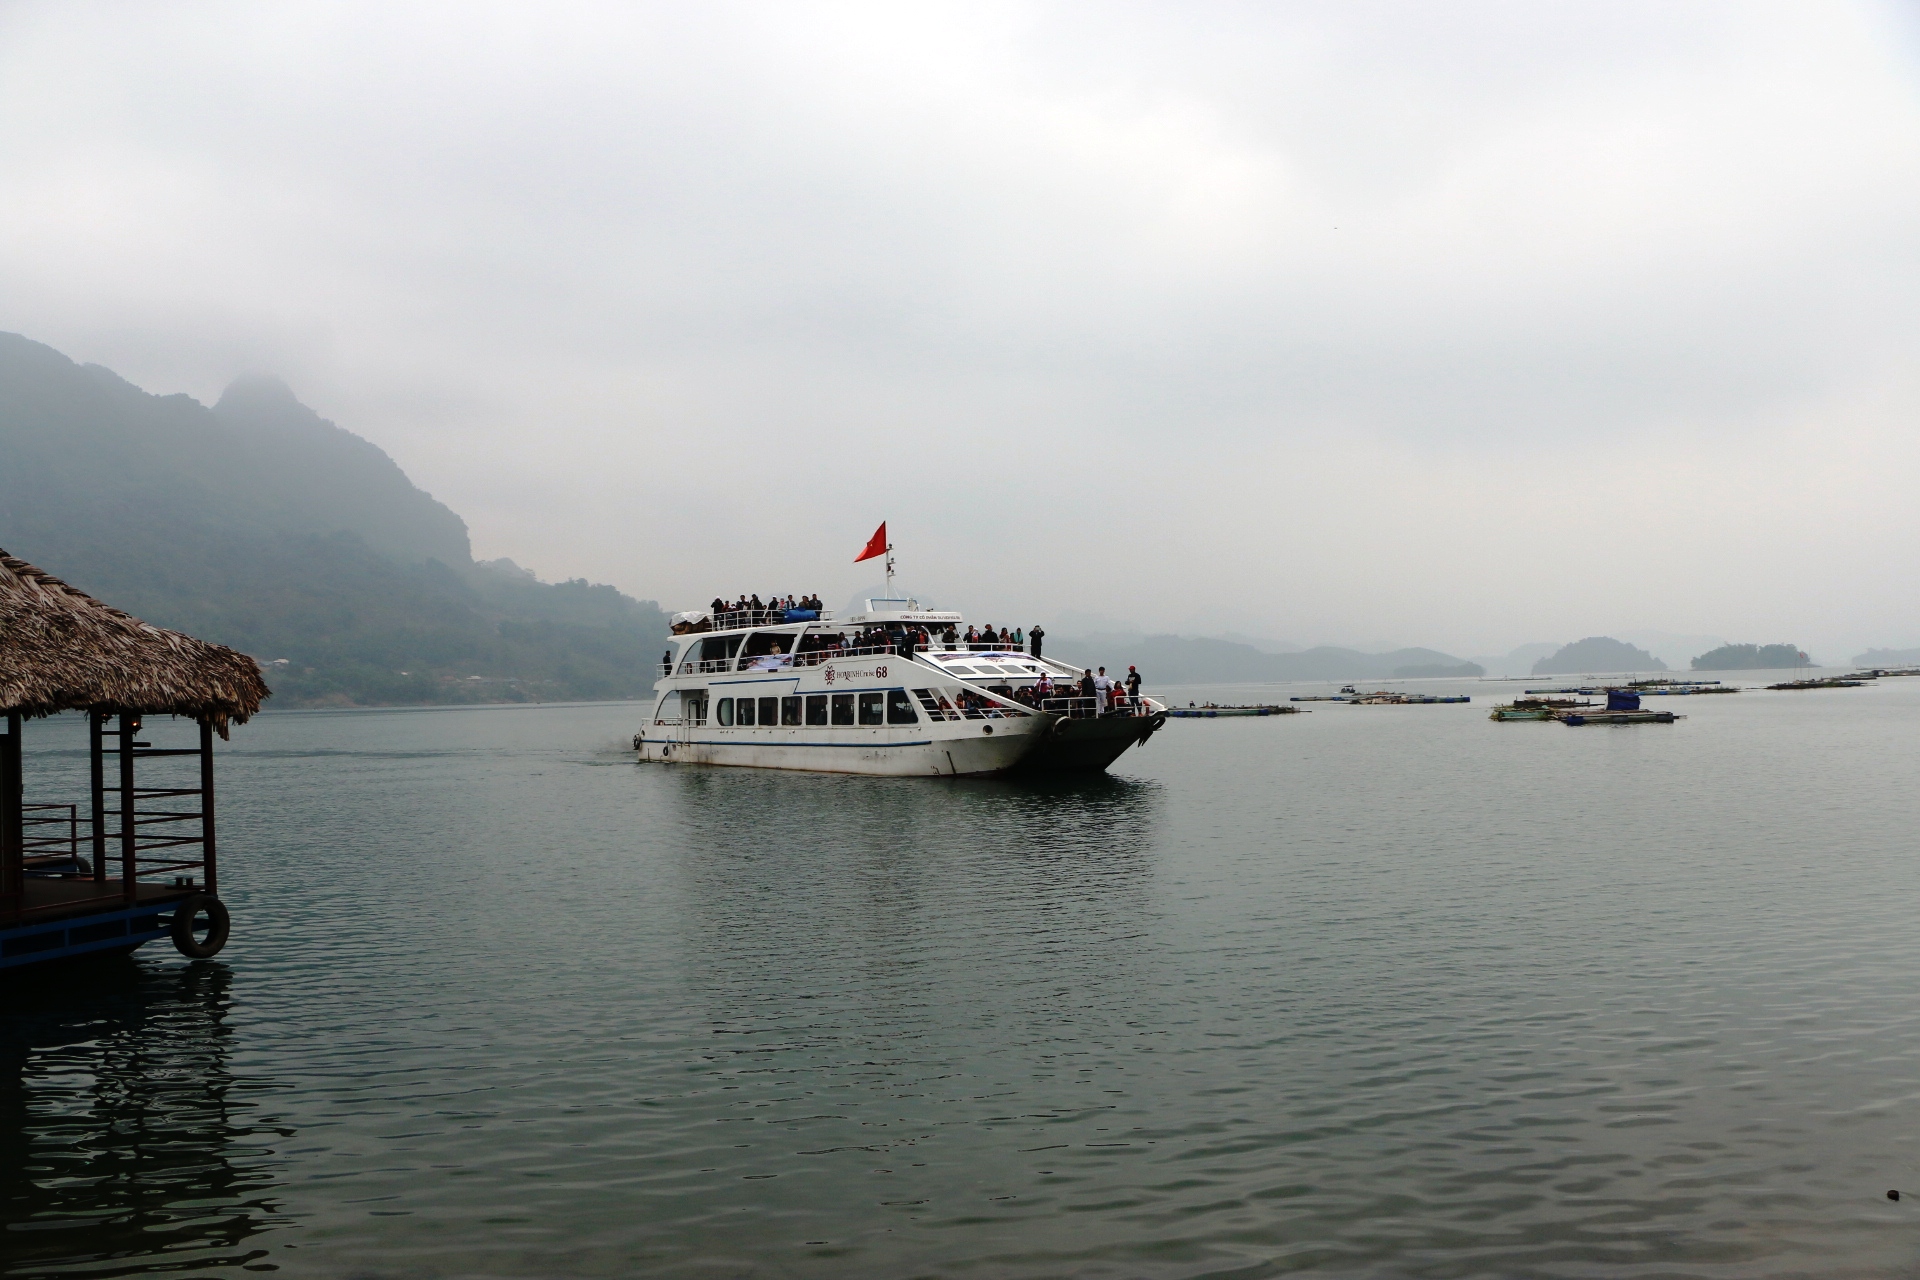 Tour du lịch tâm linh và trải nghiệm du thuyền hồ Hòa Bình đầu tiên với chủ đề Chào năm mới 2018.